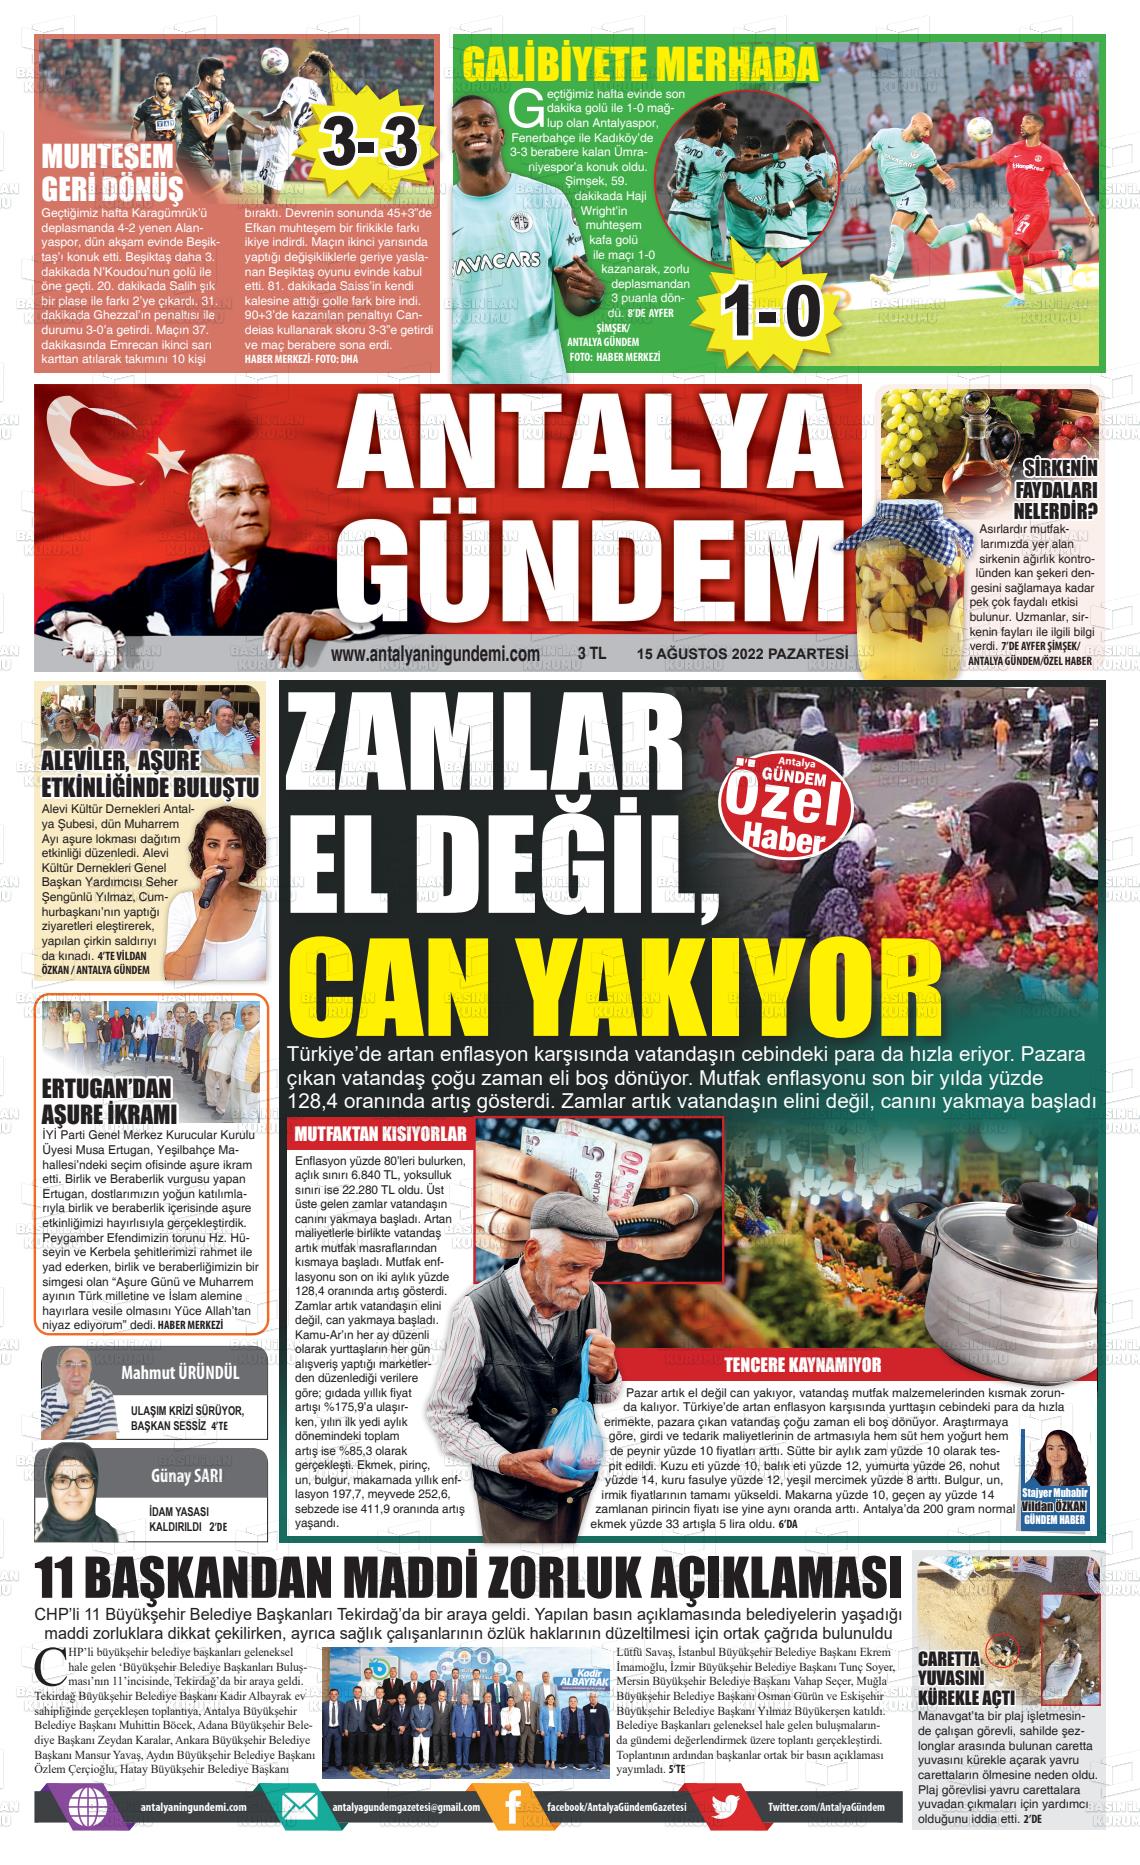 15 Ağustos 2022 Antalya'nın Gündemi Gazete Manşeti